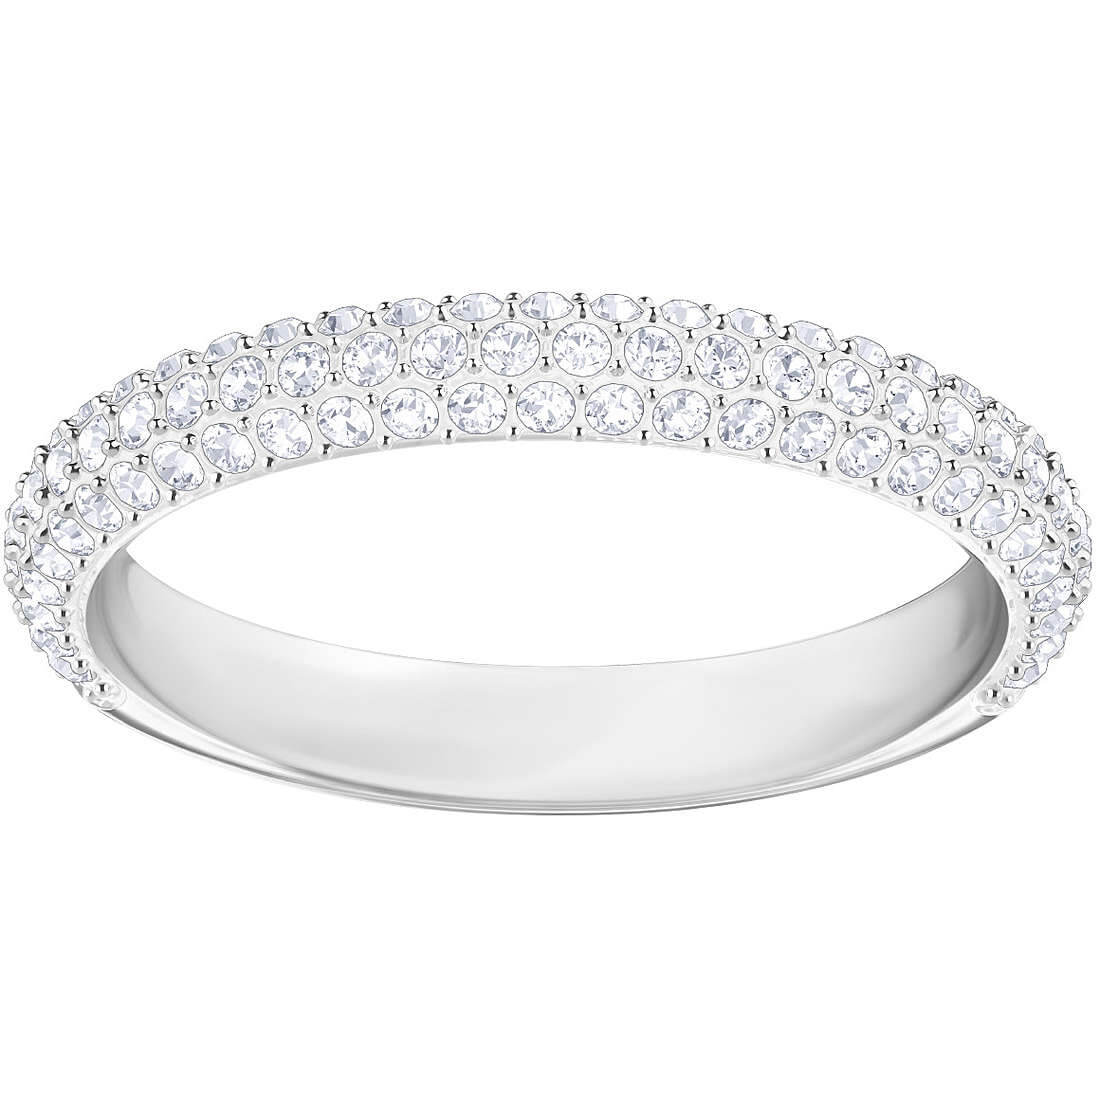 Swarovski Luxusní prsten s krystaly Swarovski Stone 5383948 60 mm